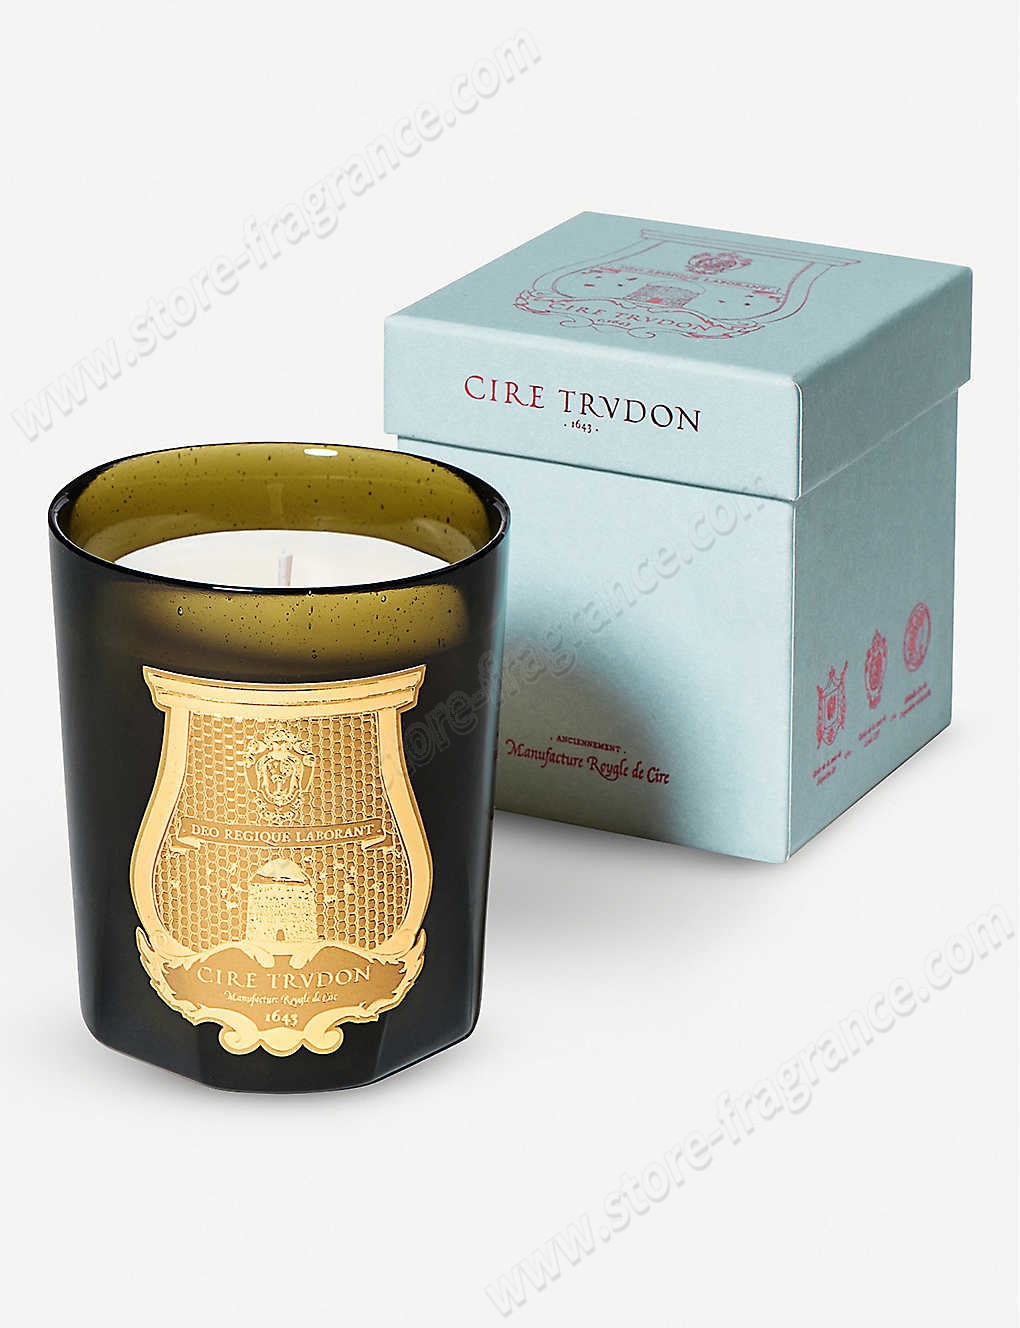 CIRE TRUDON/Trianon scented candle 270g ✿ Discount Store - CIRE TRUDON/Trianon scented candle 270g ✿ Discount Store